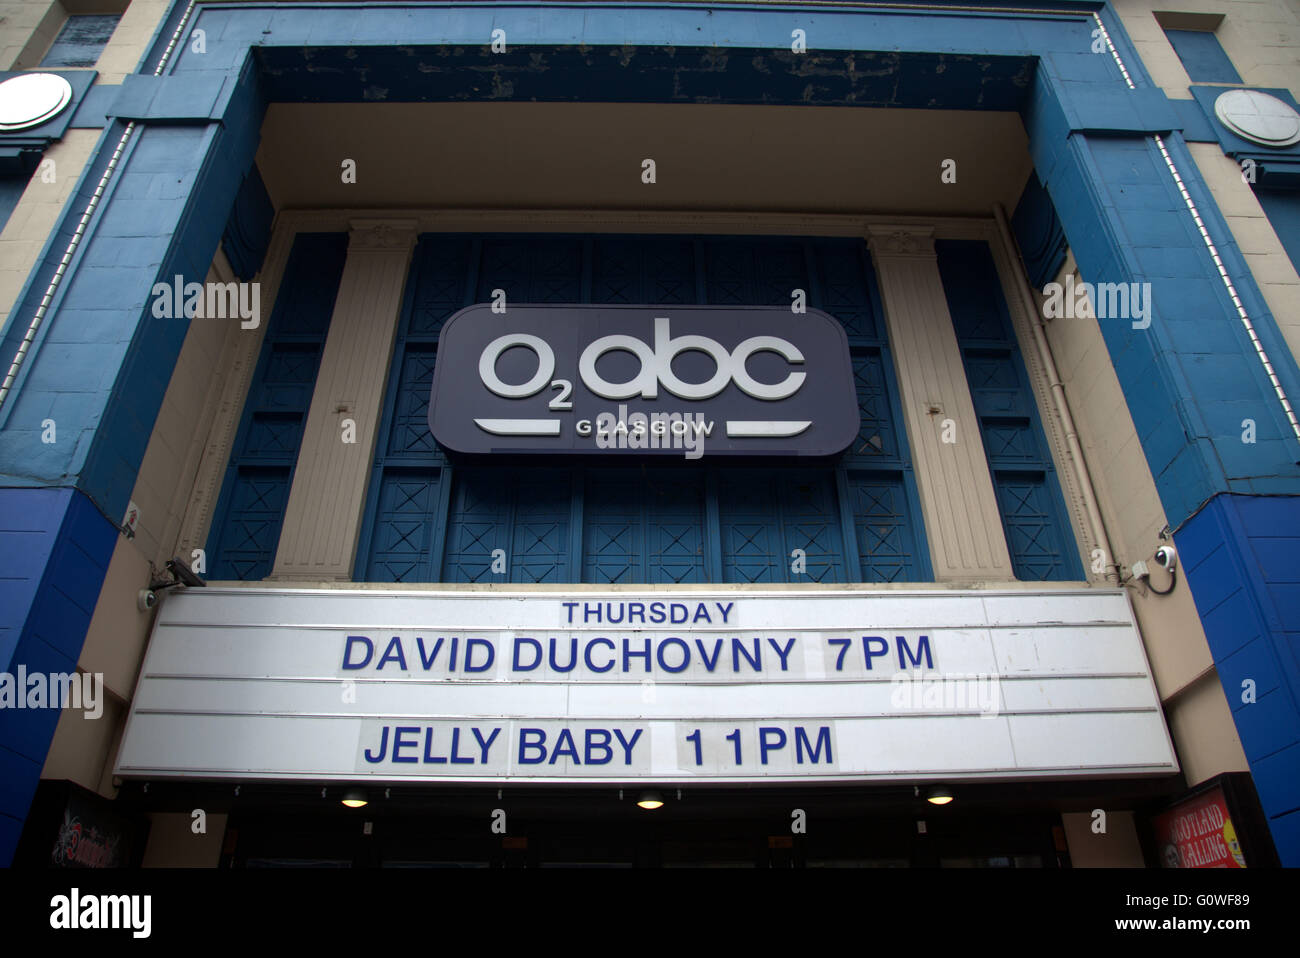 David Duchovny beginnt de Bein seiner europäischen Tour in Glasgow O2 ABC am Donnerstag, den 12. Mai Glasgow, Scotand, U.K Veranstaltungsort Stockfoto